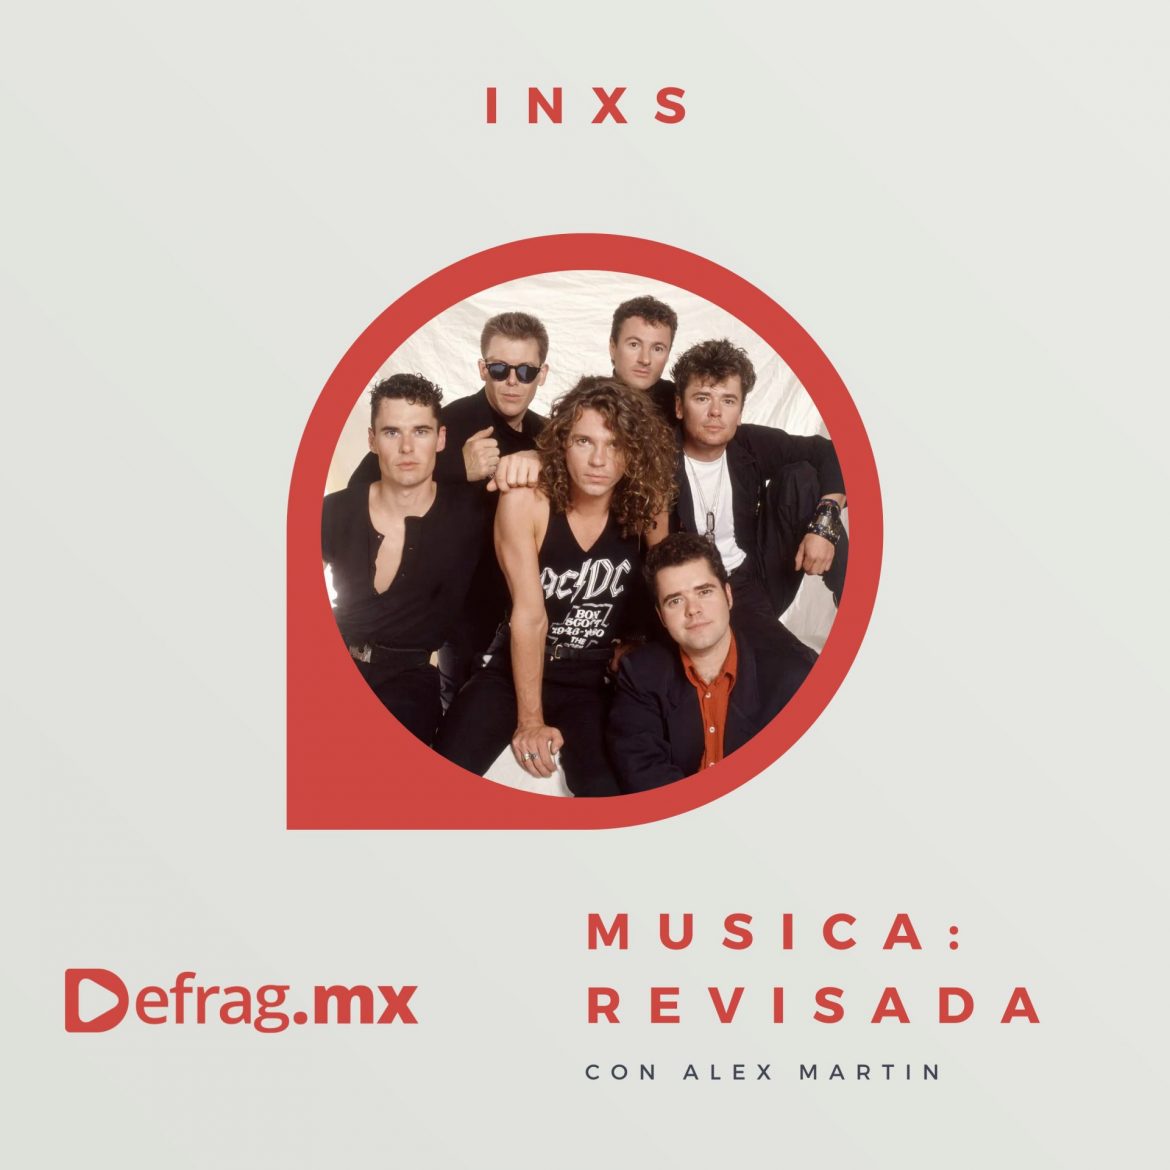 Defrag.mx Podcast Música Revisada INXS